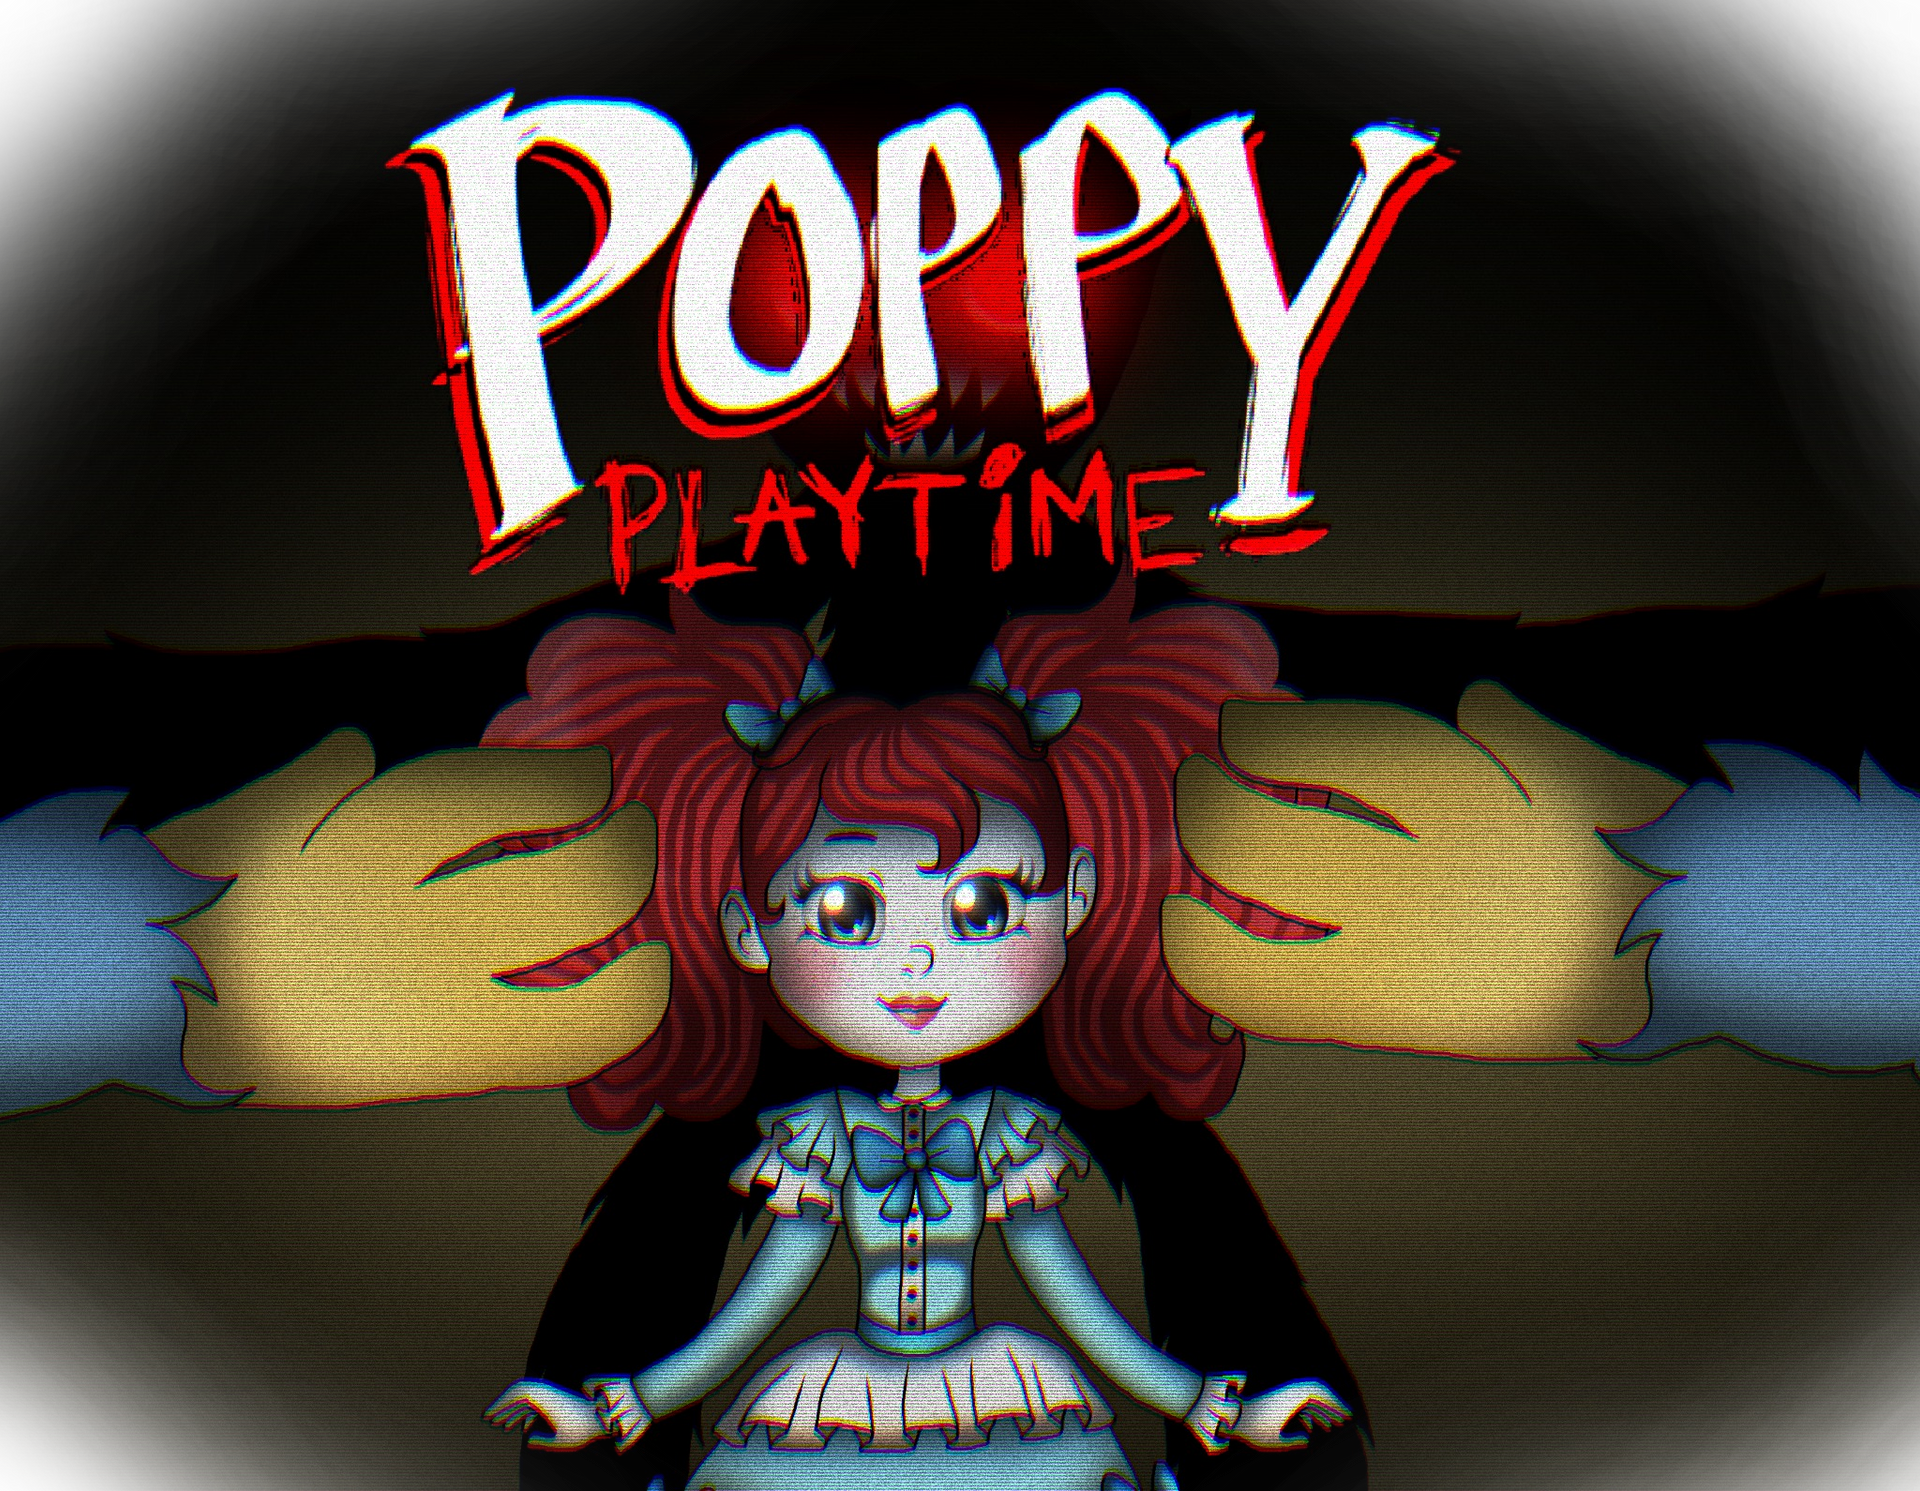 Poppy Playtime Poppy by Gnisca2152 on DeviantArt